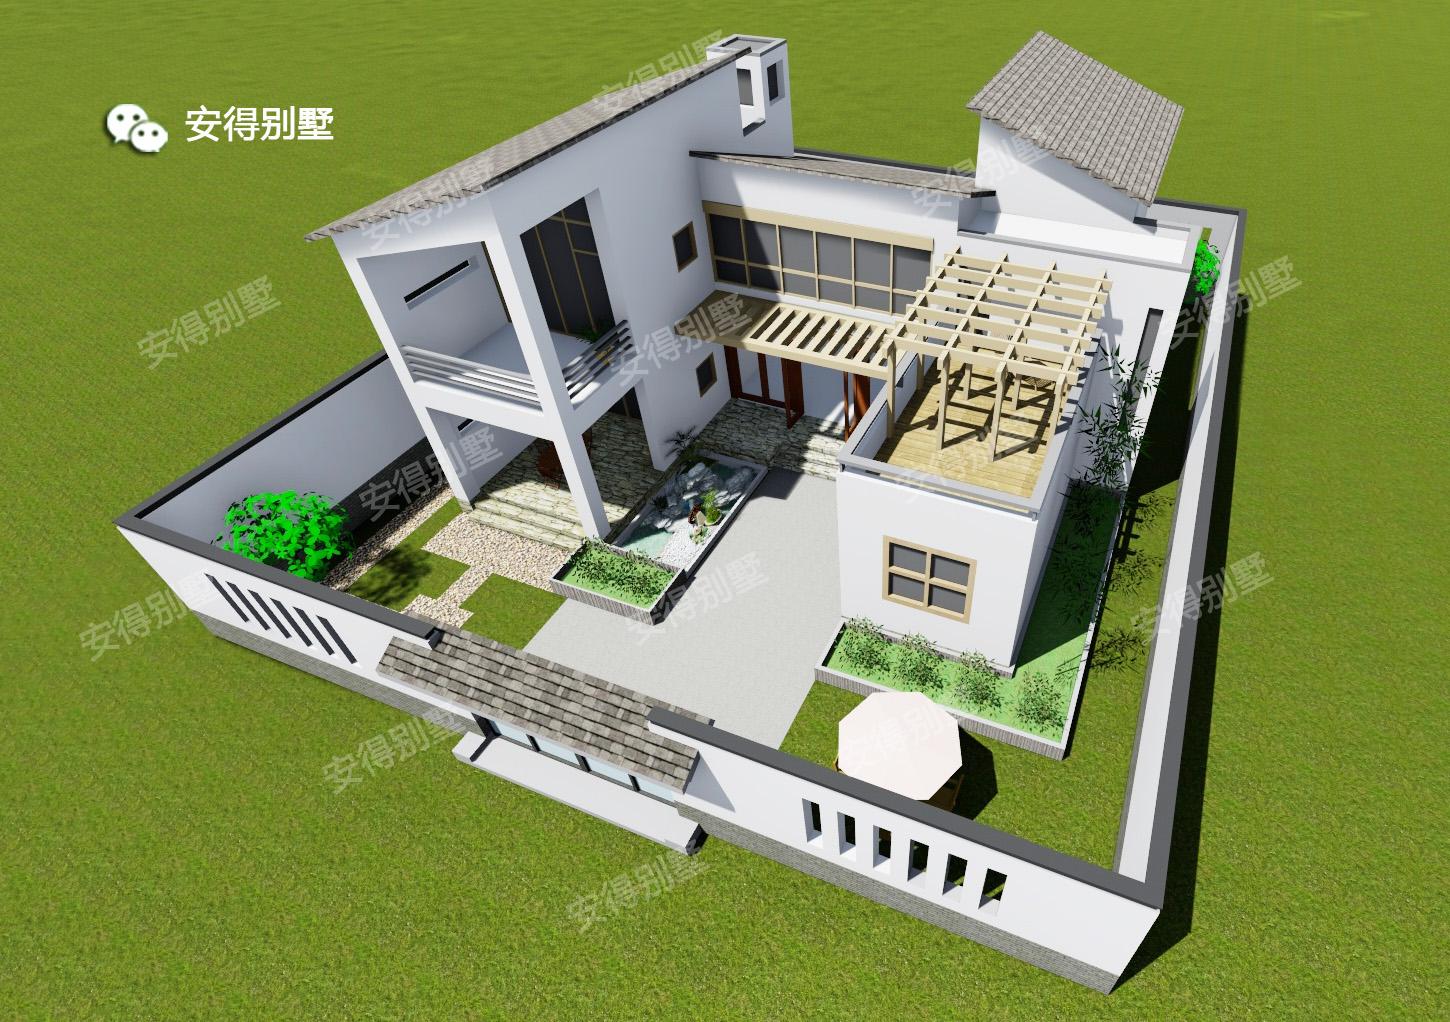 大方的农村用小别墅附带效果图免费下载 -CAD之家